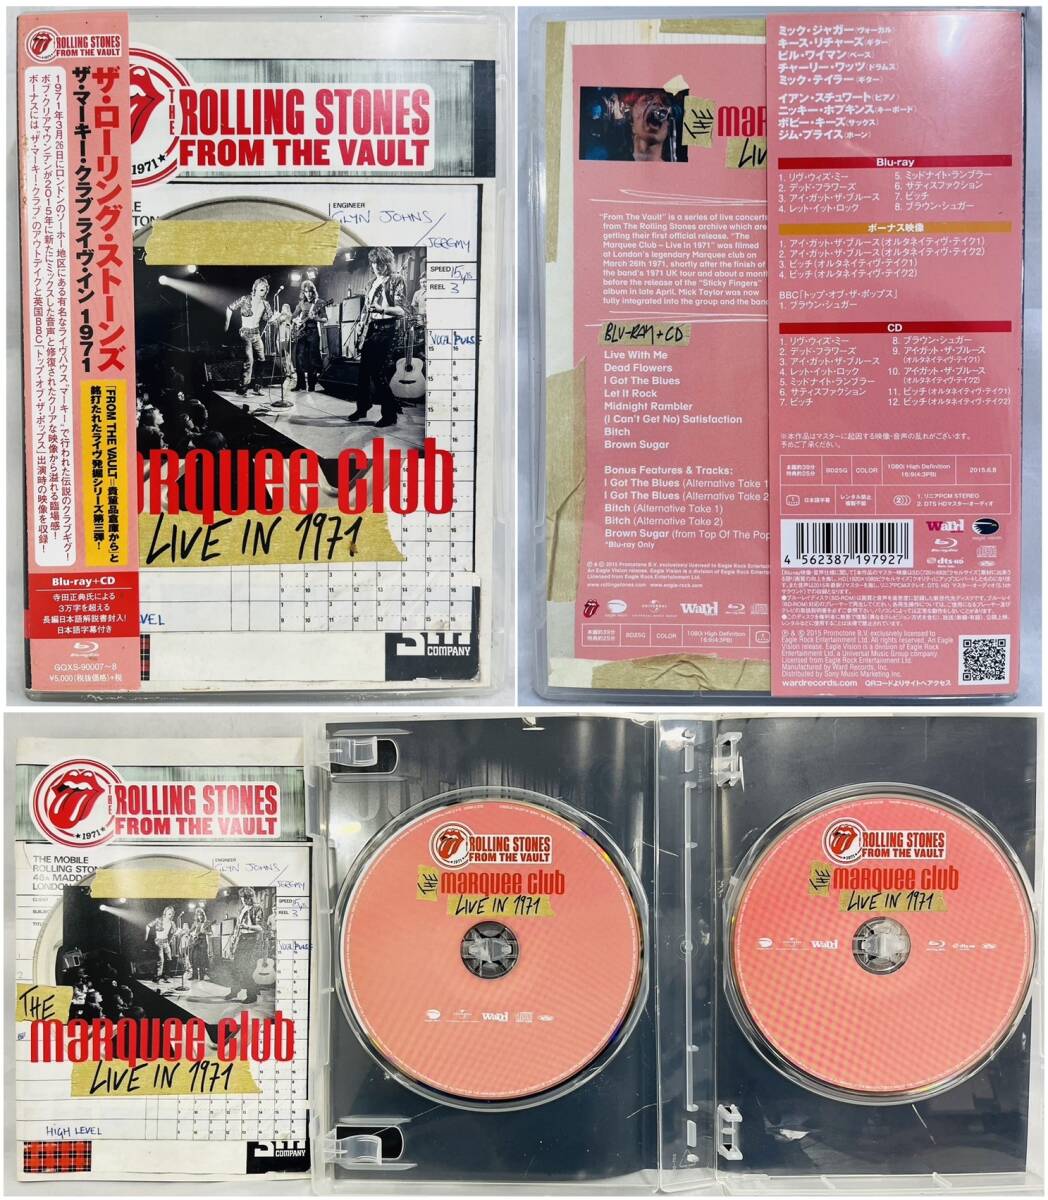 [240426-4T][ б/у товар ]{ The * low кольцо * Stone z суммировать }THE ROLLING STONES/SHM-CD/ первый раз производство ограничение / Blue-ray /CD/Blu-ray/ западная музыка блокировка 